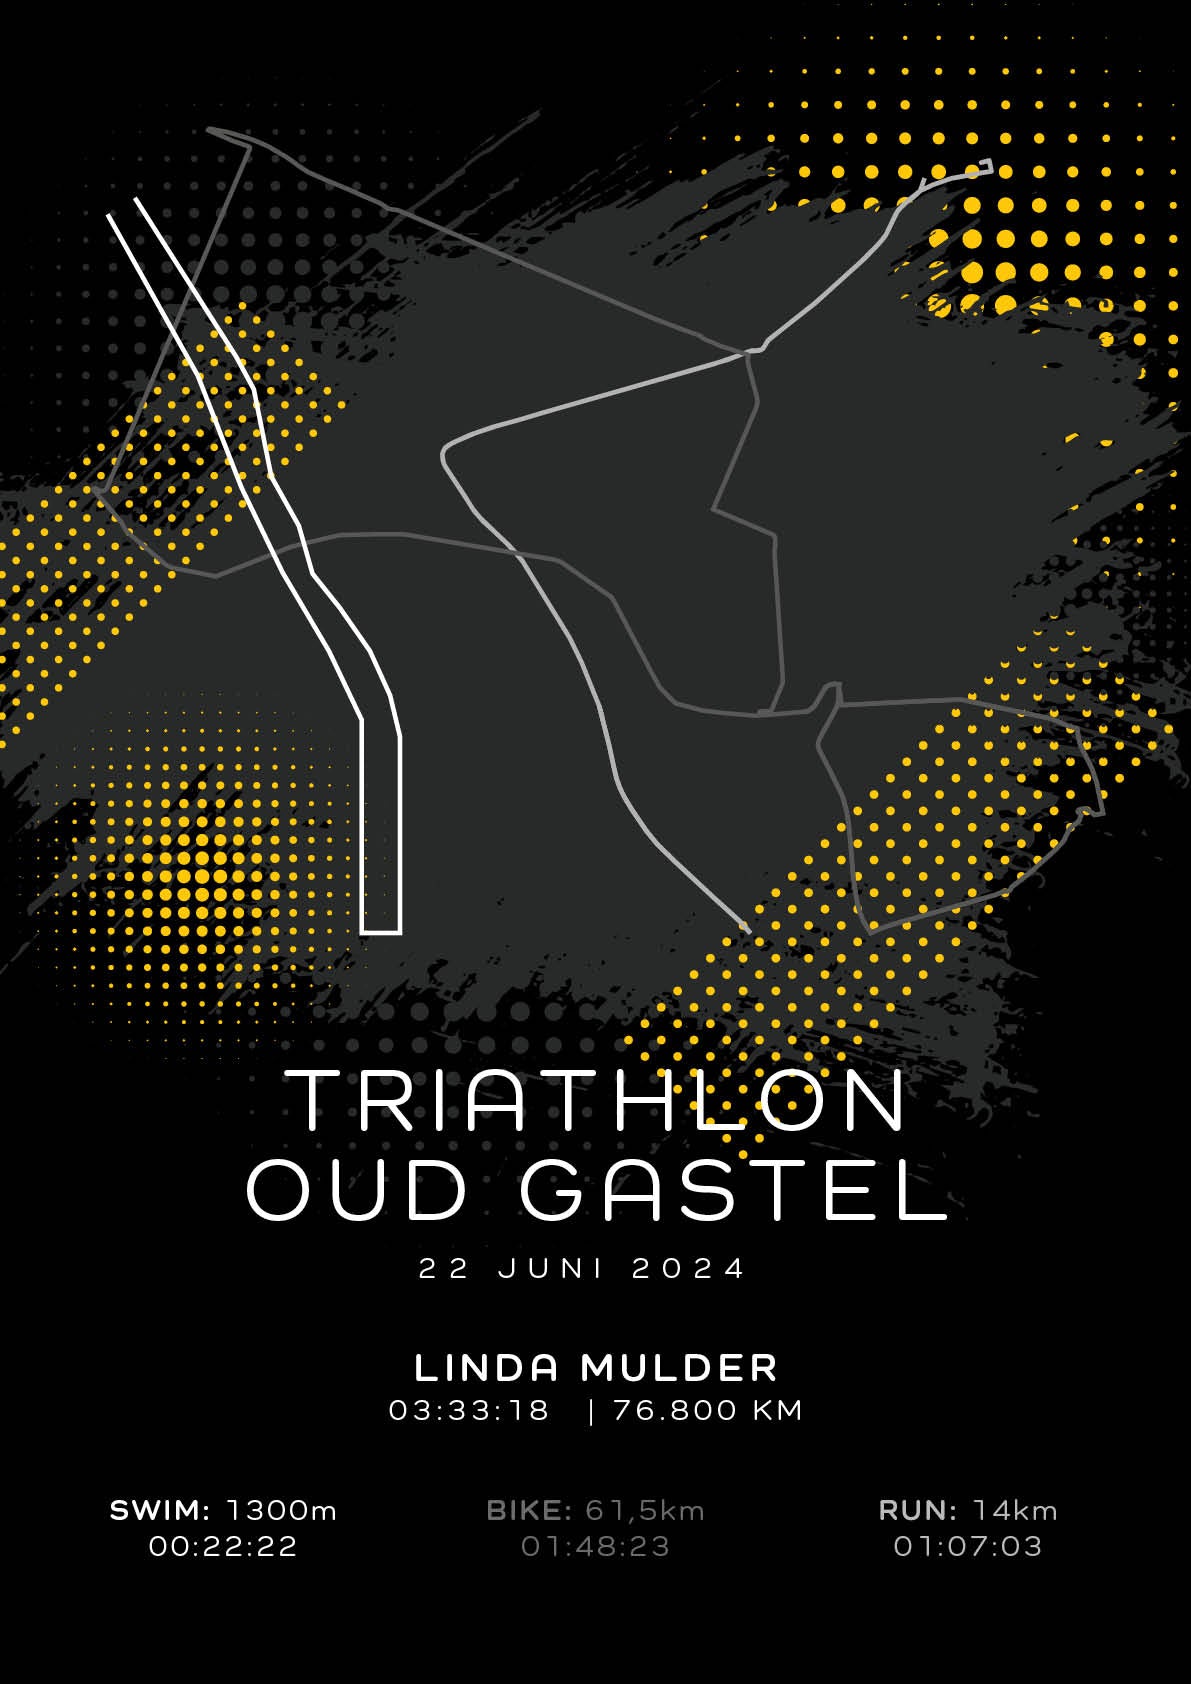 Triathlon Oud Gastel - Modern Dark - Poster